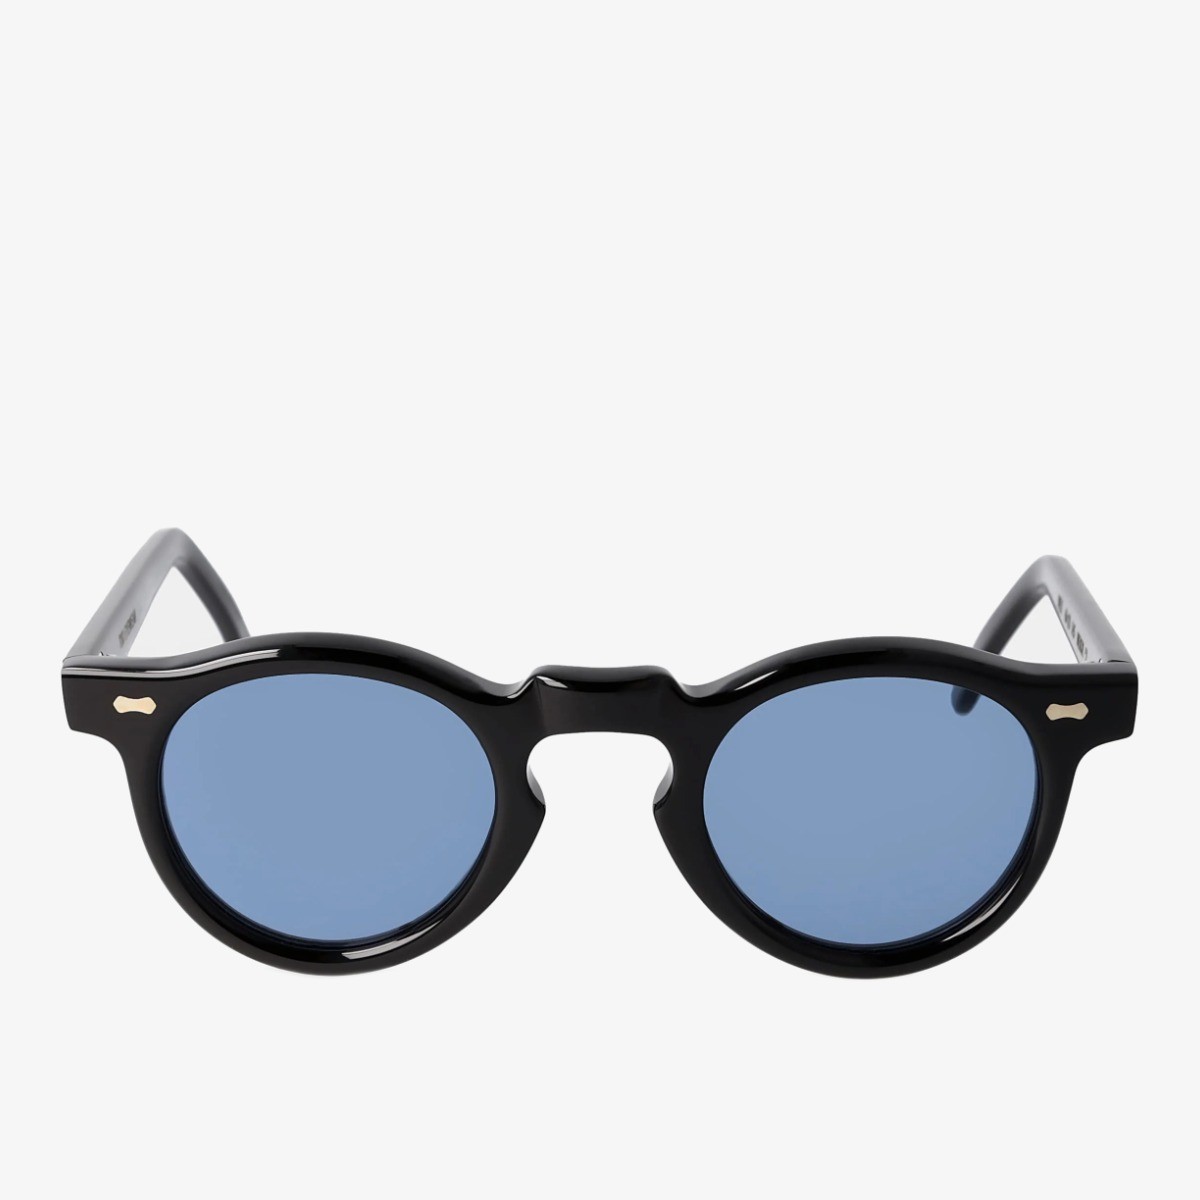 TBD Eyewear Welt black frame blue lenses sunglasses